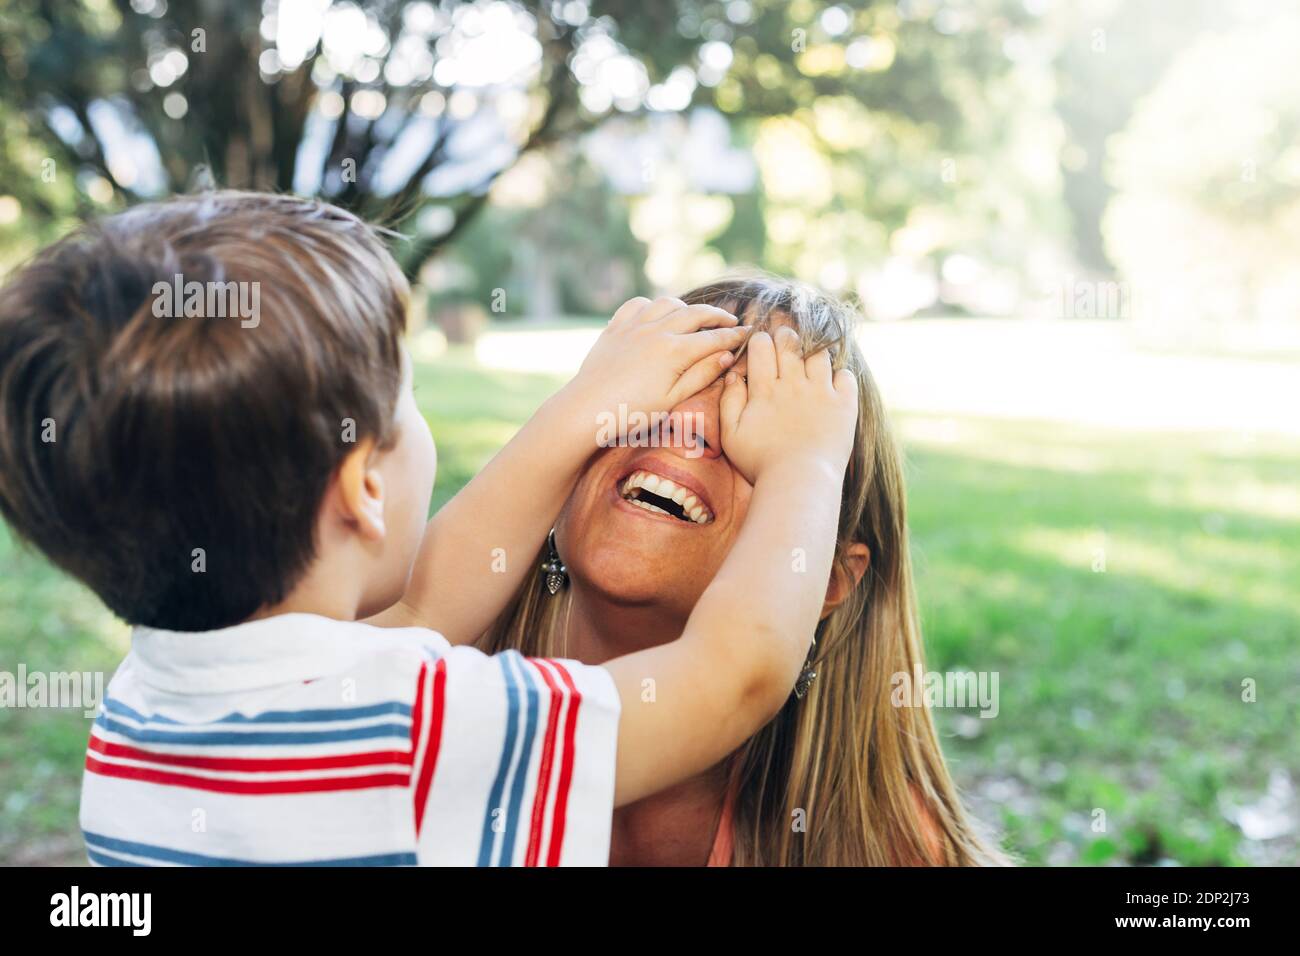 Frau spielt mit ihrem Kind. Kleiner Junge, der die Augen seiner Mutter bedeckt. Mischhäupter von al kleinen Kind immer Spaß im Park. Mutterschaft Konzept. Stockfoto